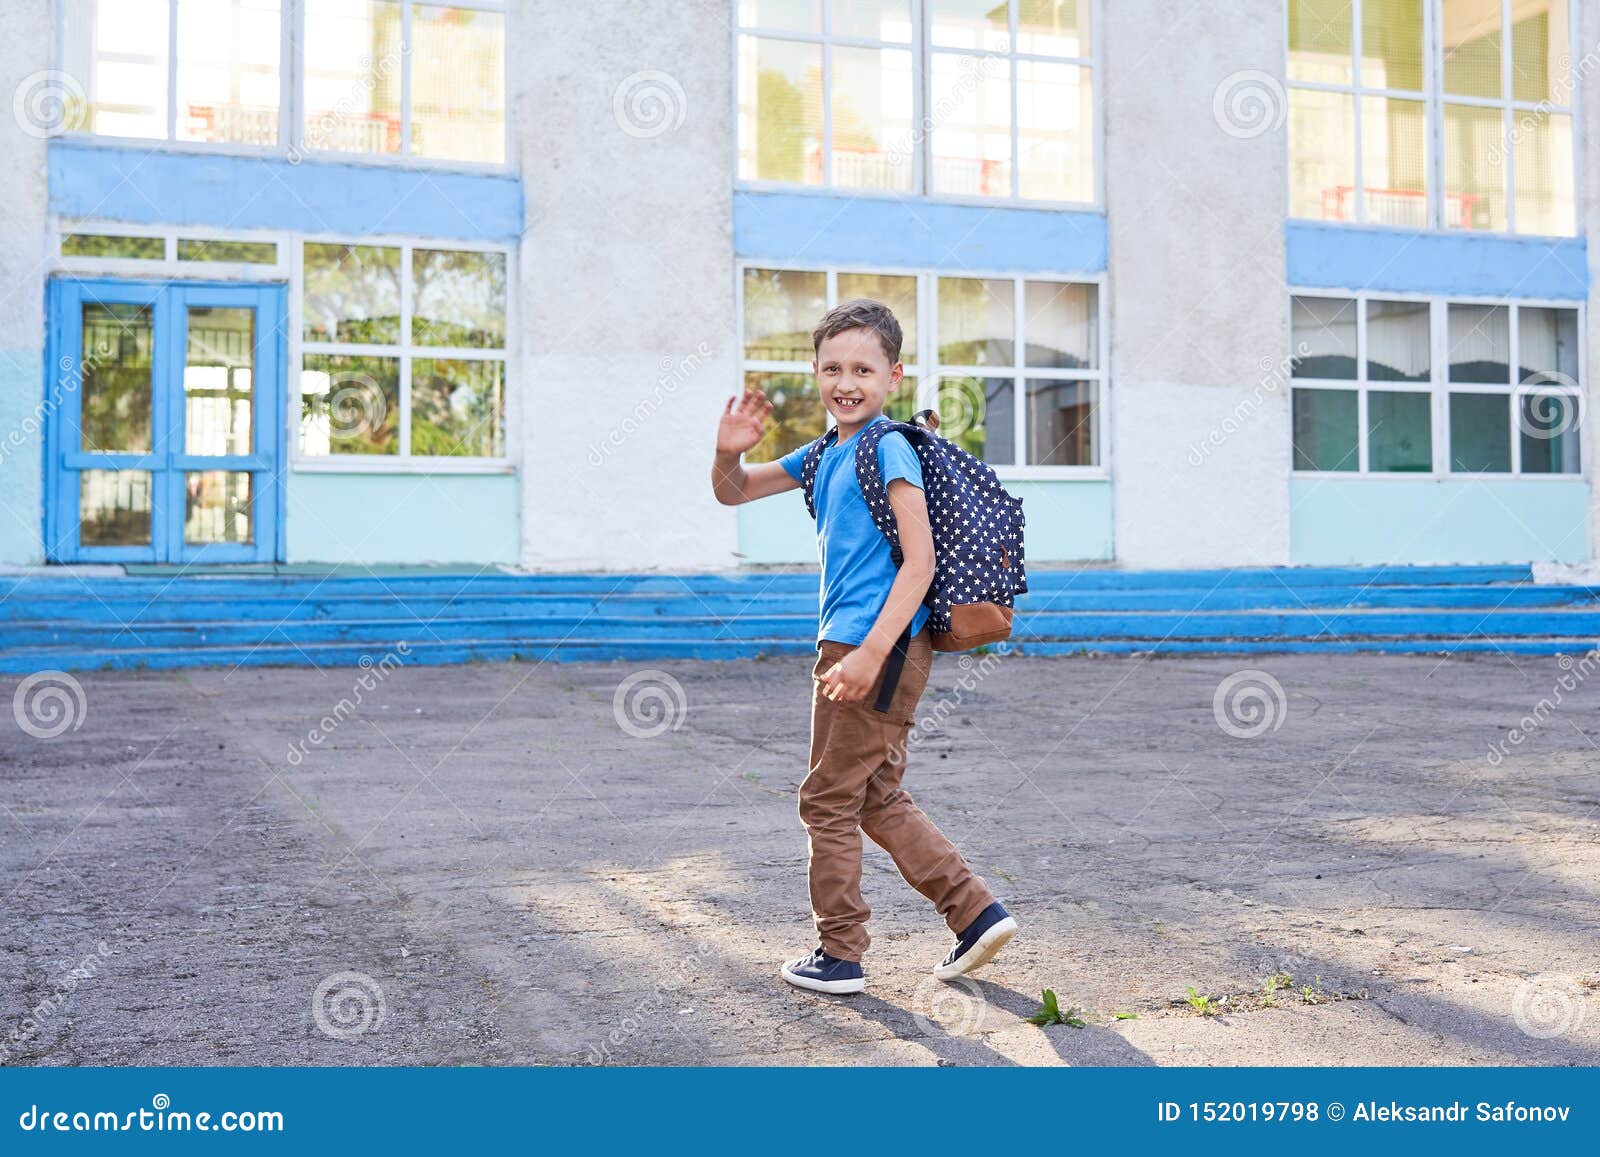 Пошел в школу пришел из школы. Мальчик идет в школу. Мальчик который ходит в школу. Школьники идут в школу. Мальчишка идёт в школу.